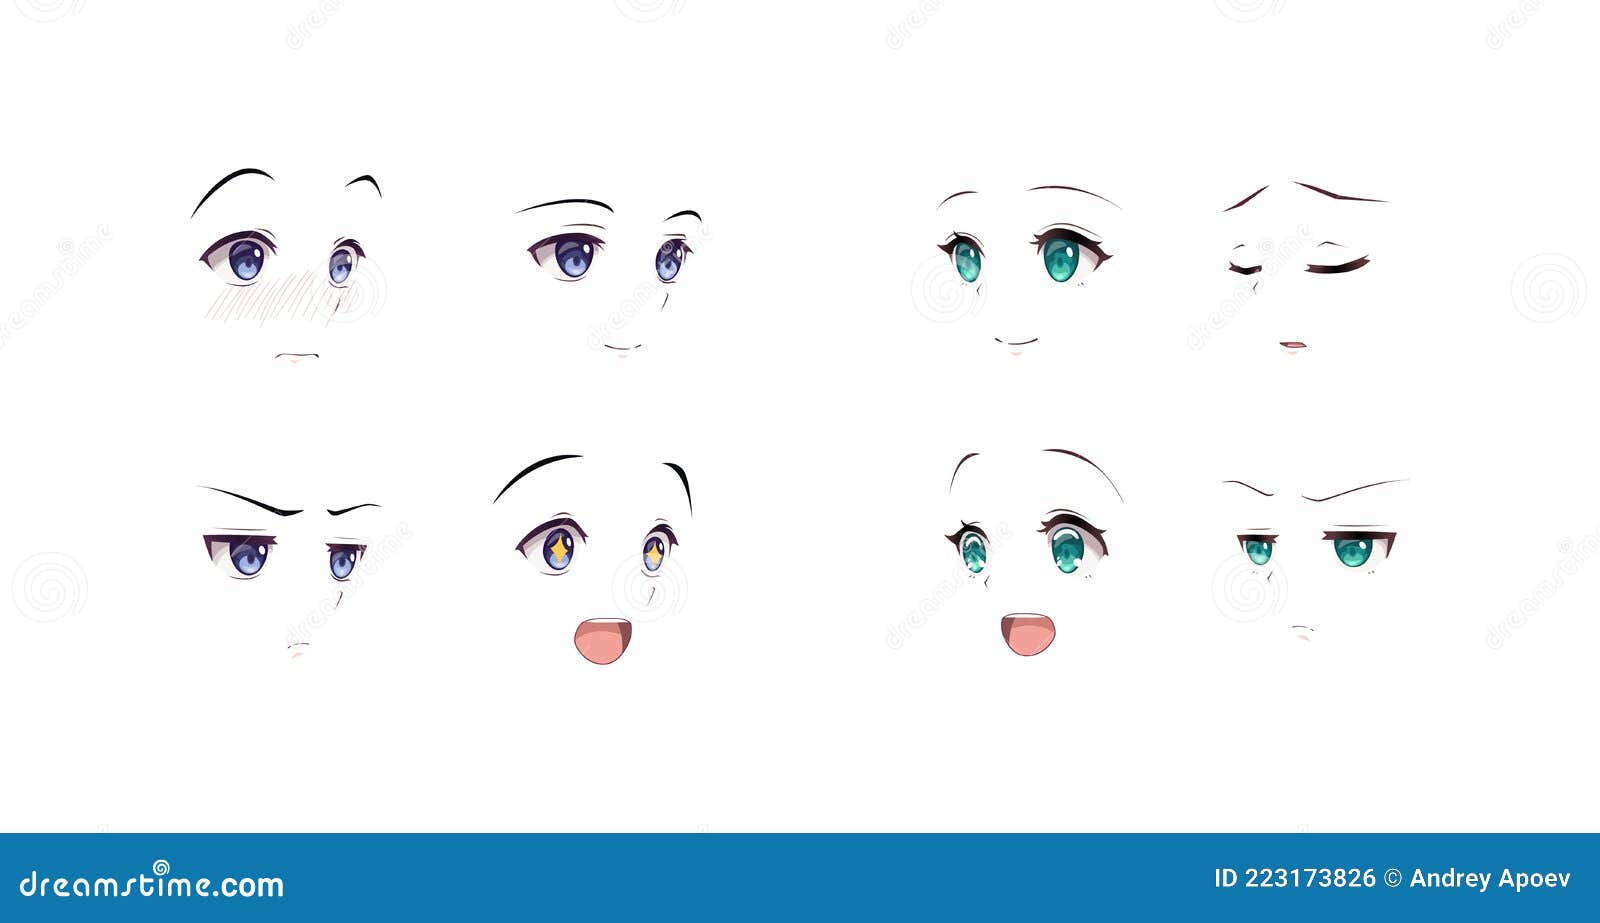 Anime Manga Boy and Girl Expressions Eyes Set. Japanese Cartoon Style Stock  Vector - Illustration of anime, manga: 223173826